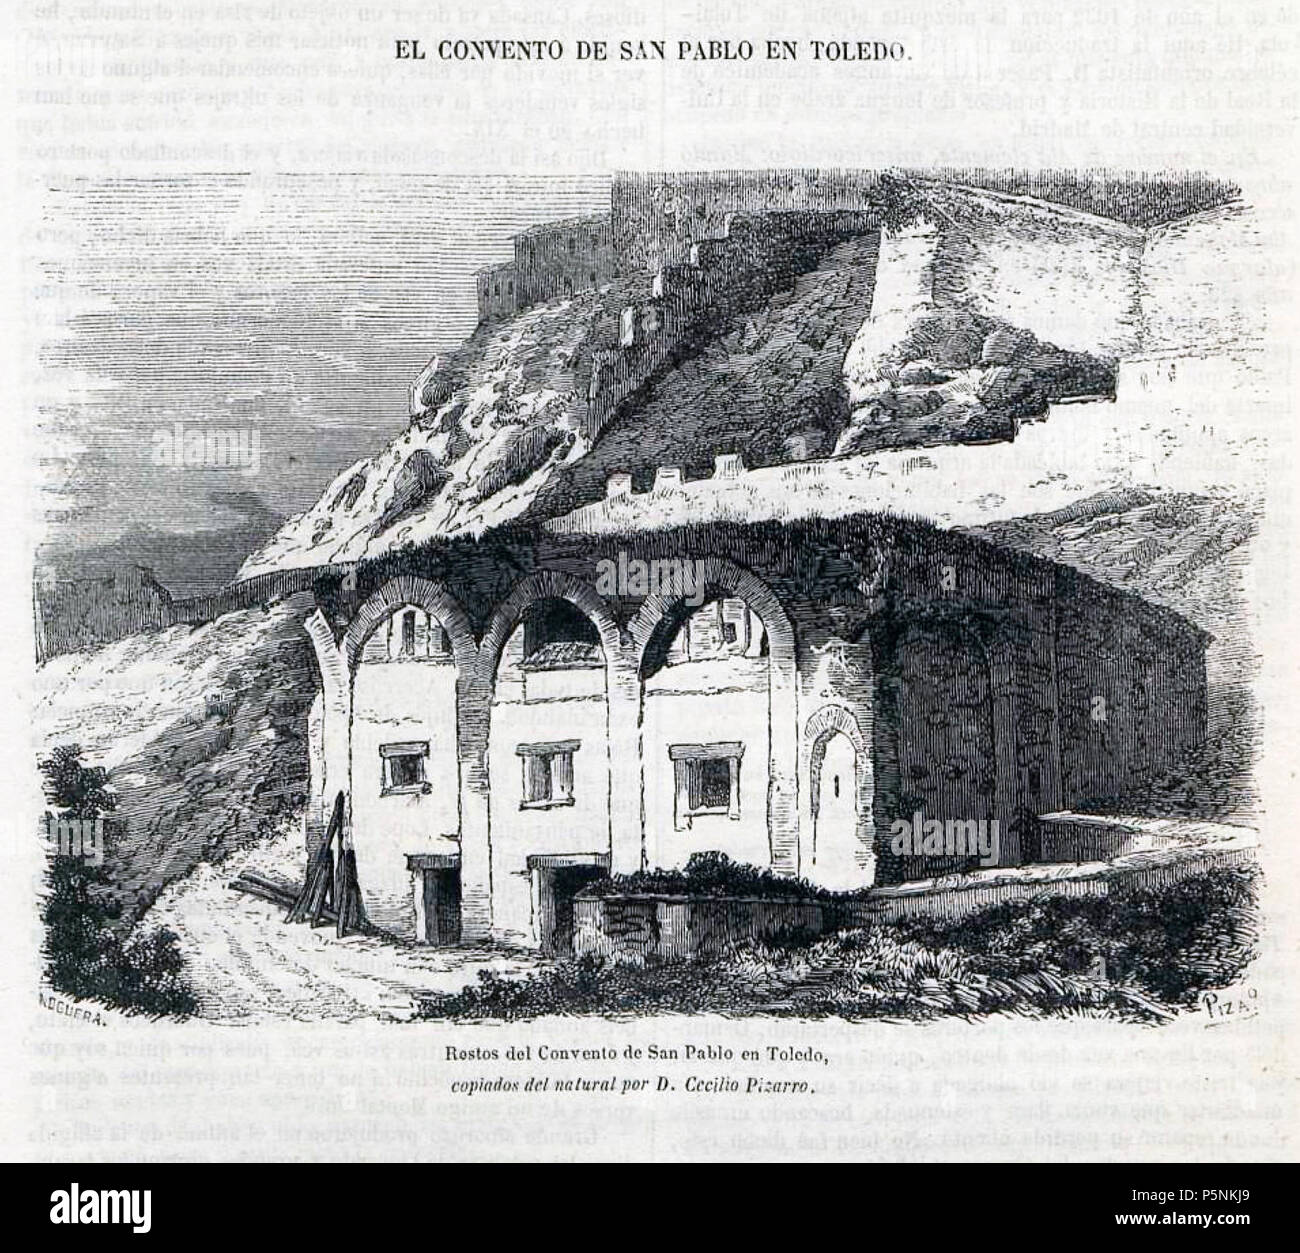 1857-06-14, Semanario Pintoresco Español, El convento de San Pablo en Toledo, Pizarro, Noguera. Stock Photo